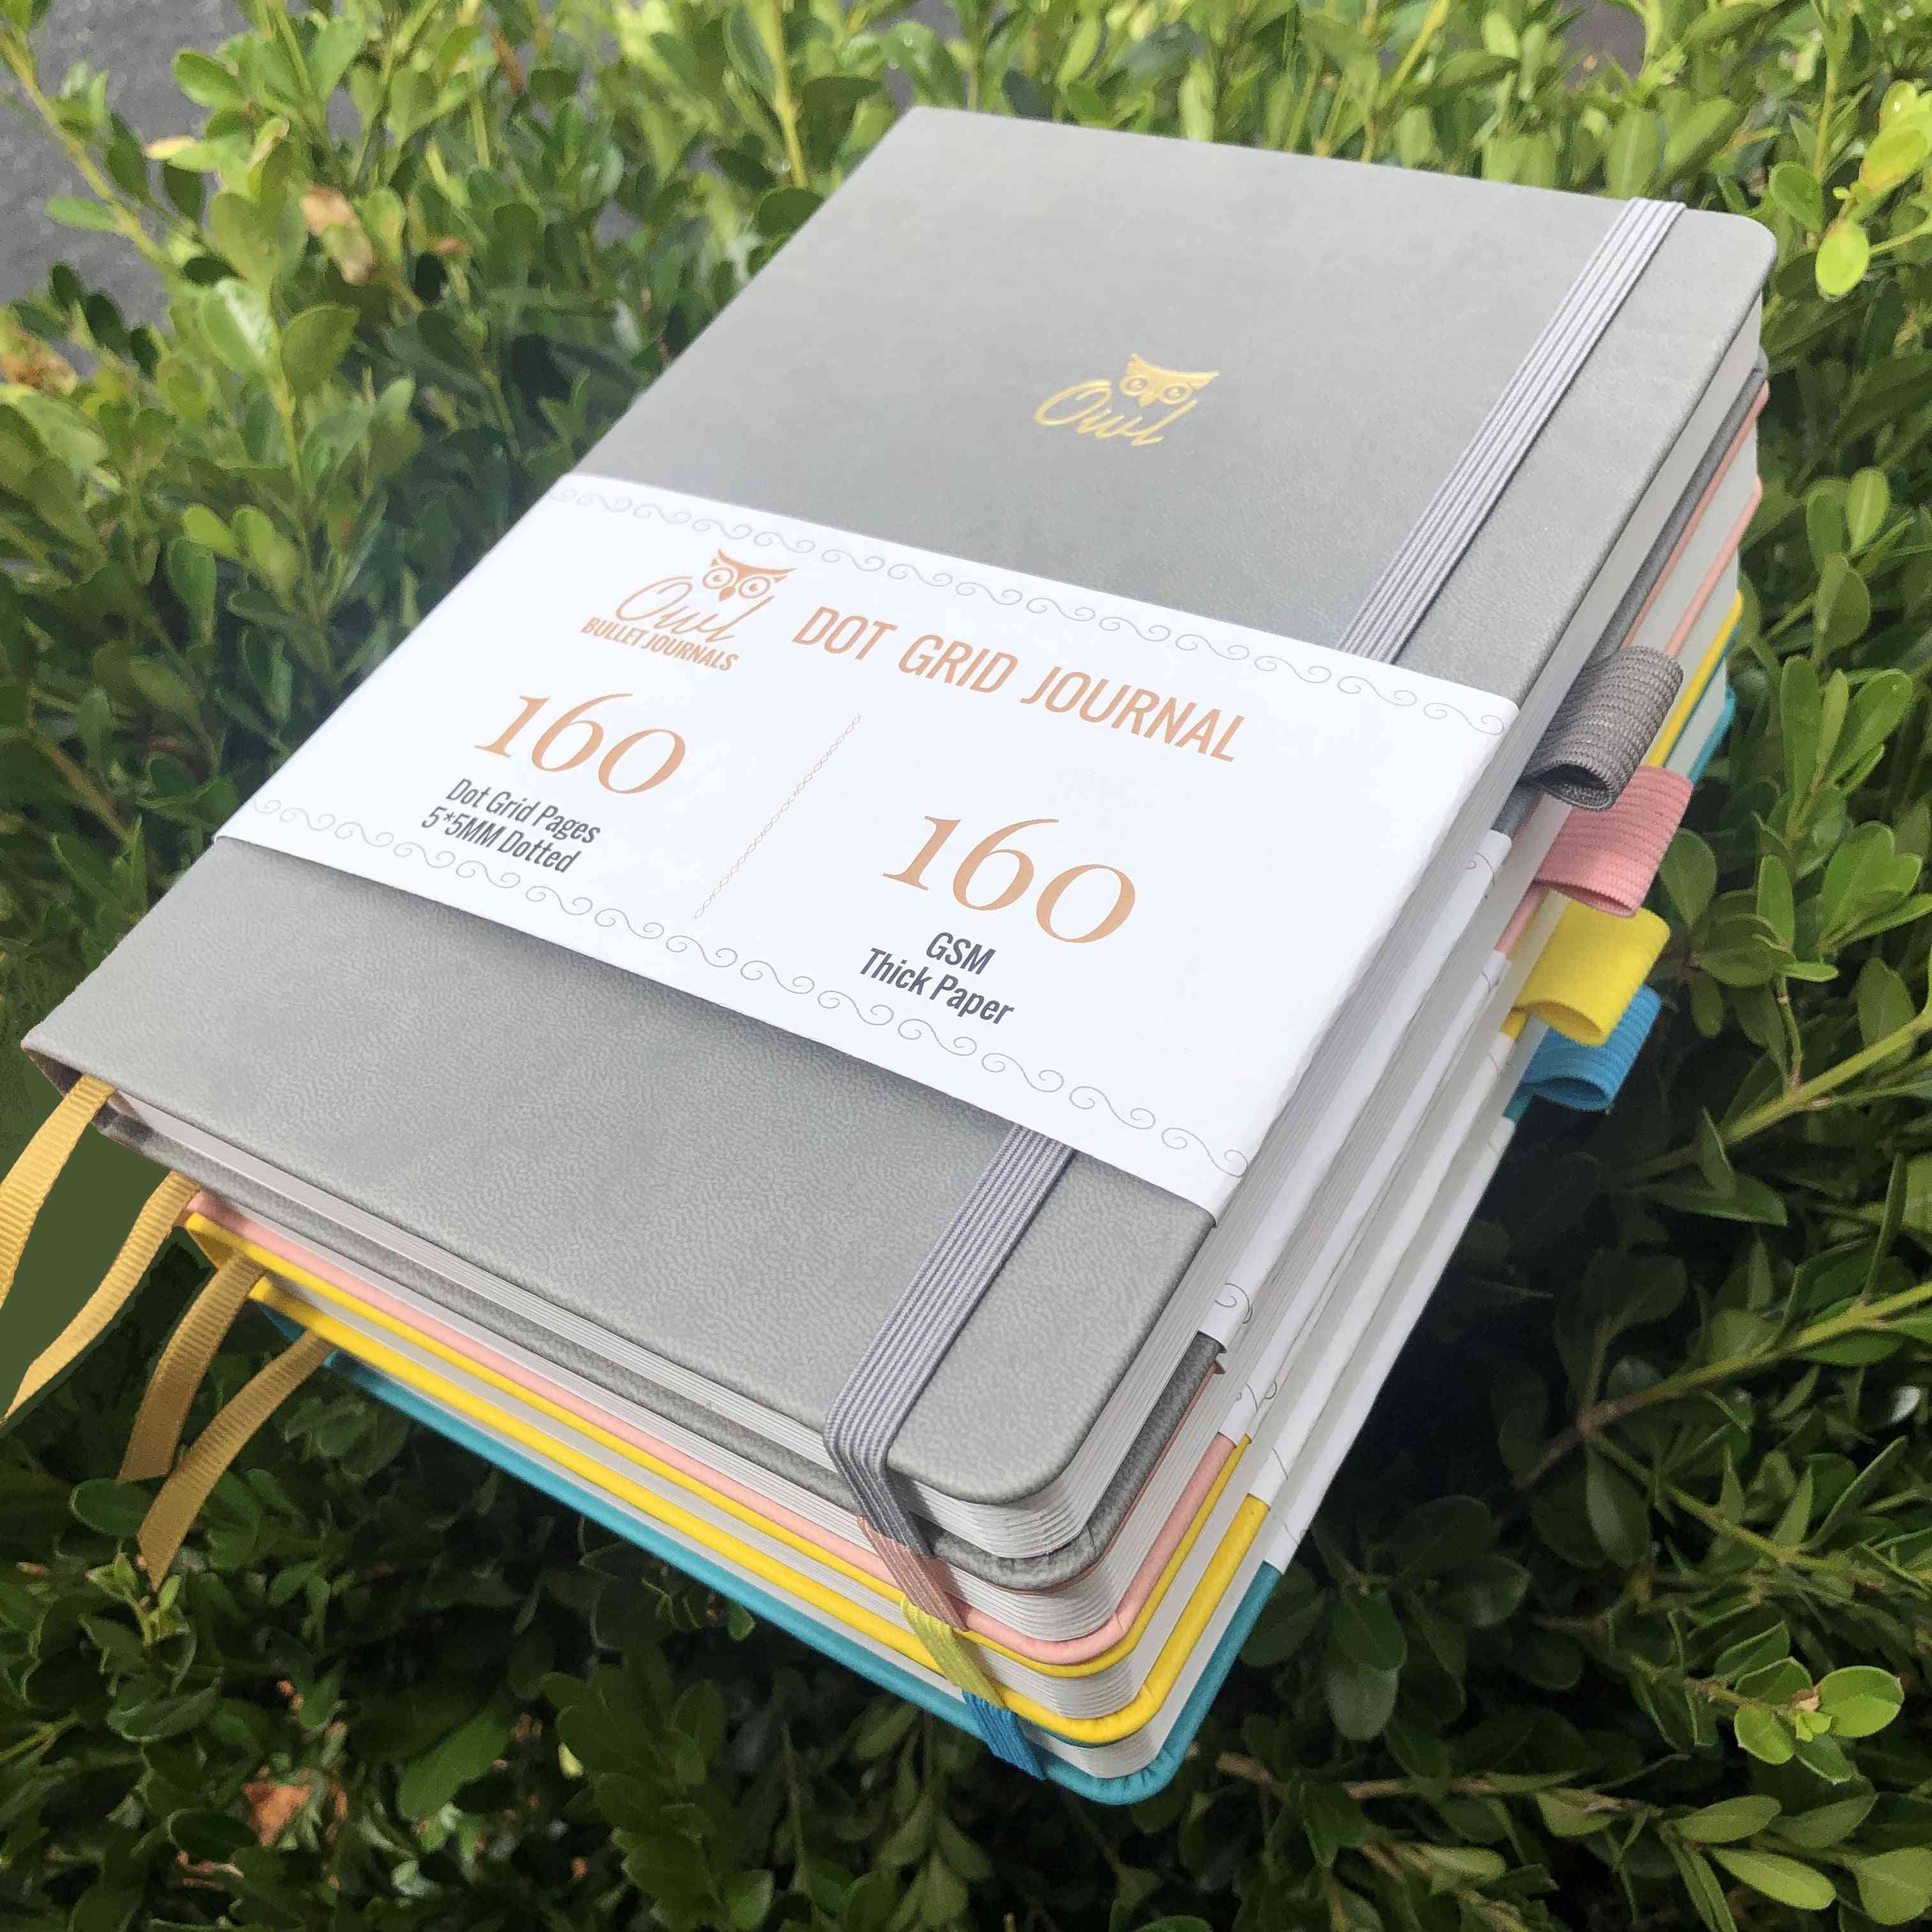 Diario dot gird cuaderno con 160 páginas, planificador de bricolaje de papel de bambú ultra grueso